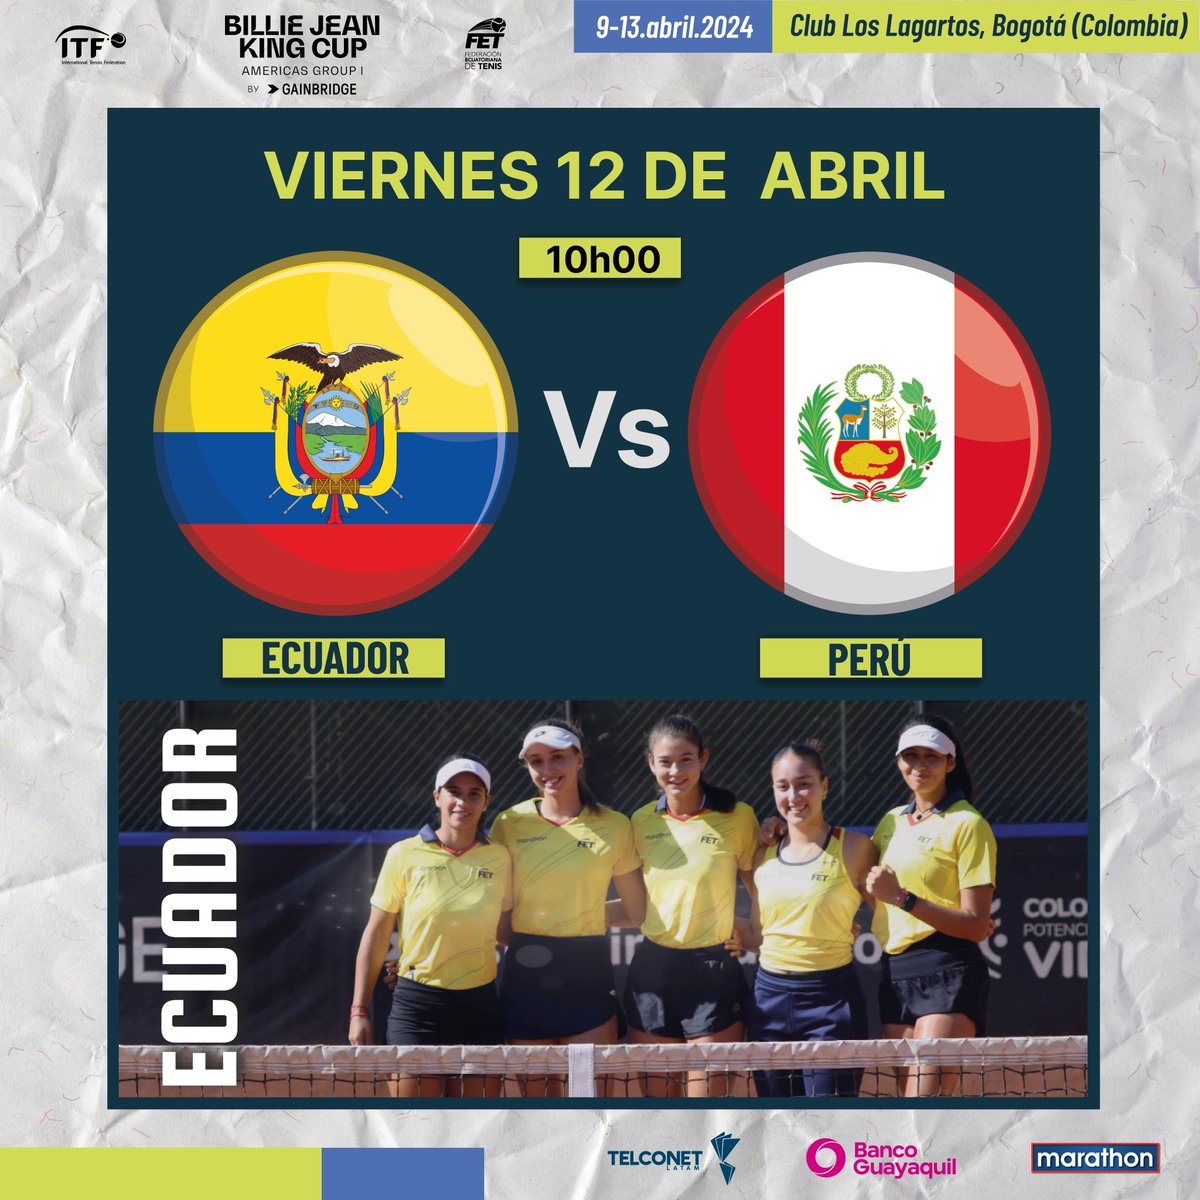 Mañana Ecuador enfrentará a Perú en la Billie Jean King Cup, que se juega del 9 al 13 de abril en el Club Los Lagartos, Bogotá (Colombia). @BJKCup Gracias al auspicio de: @TelconetLatam @BancoGuayaquil @marathonsports_